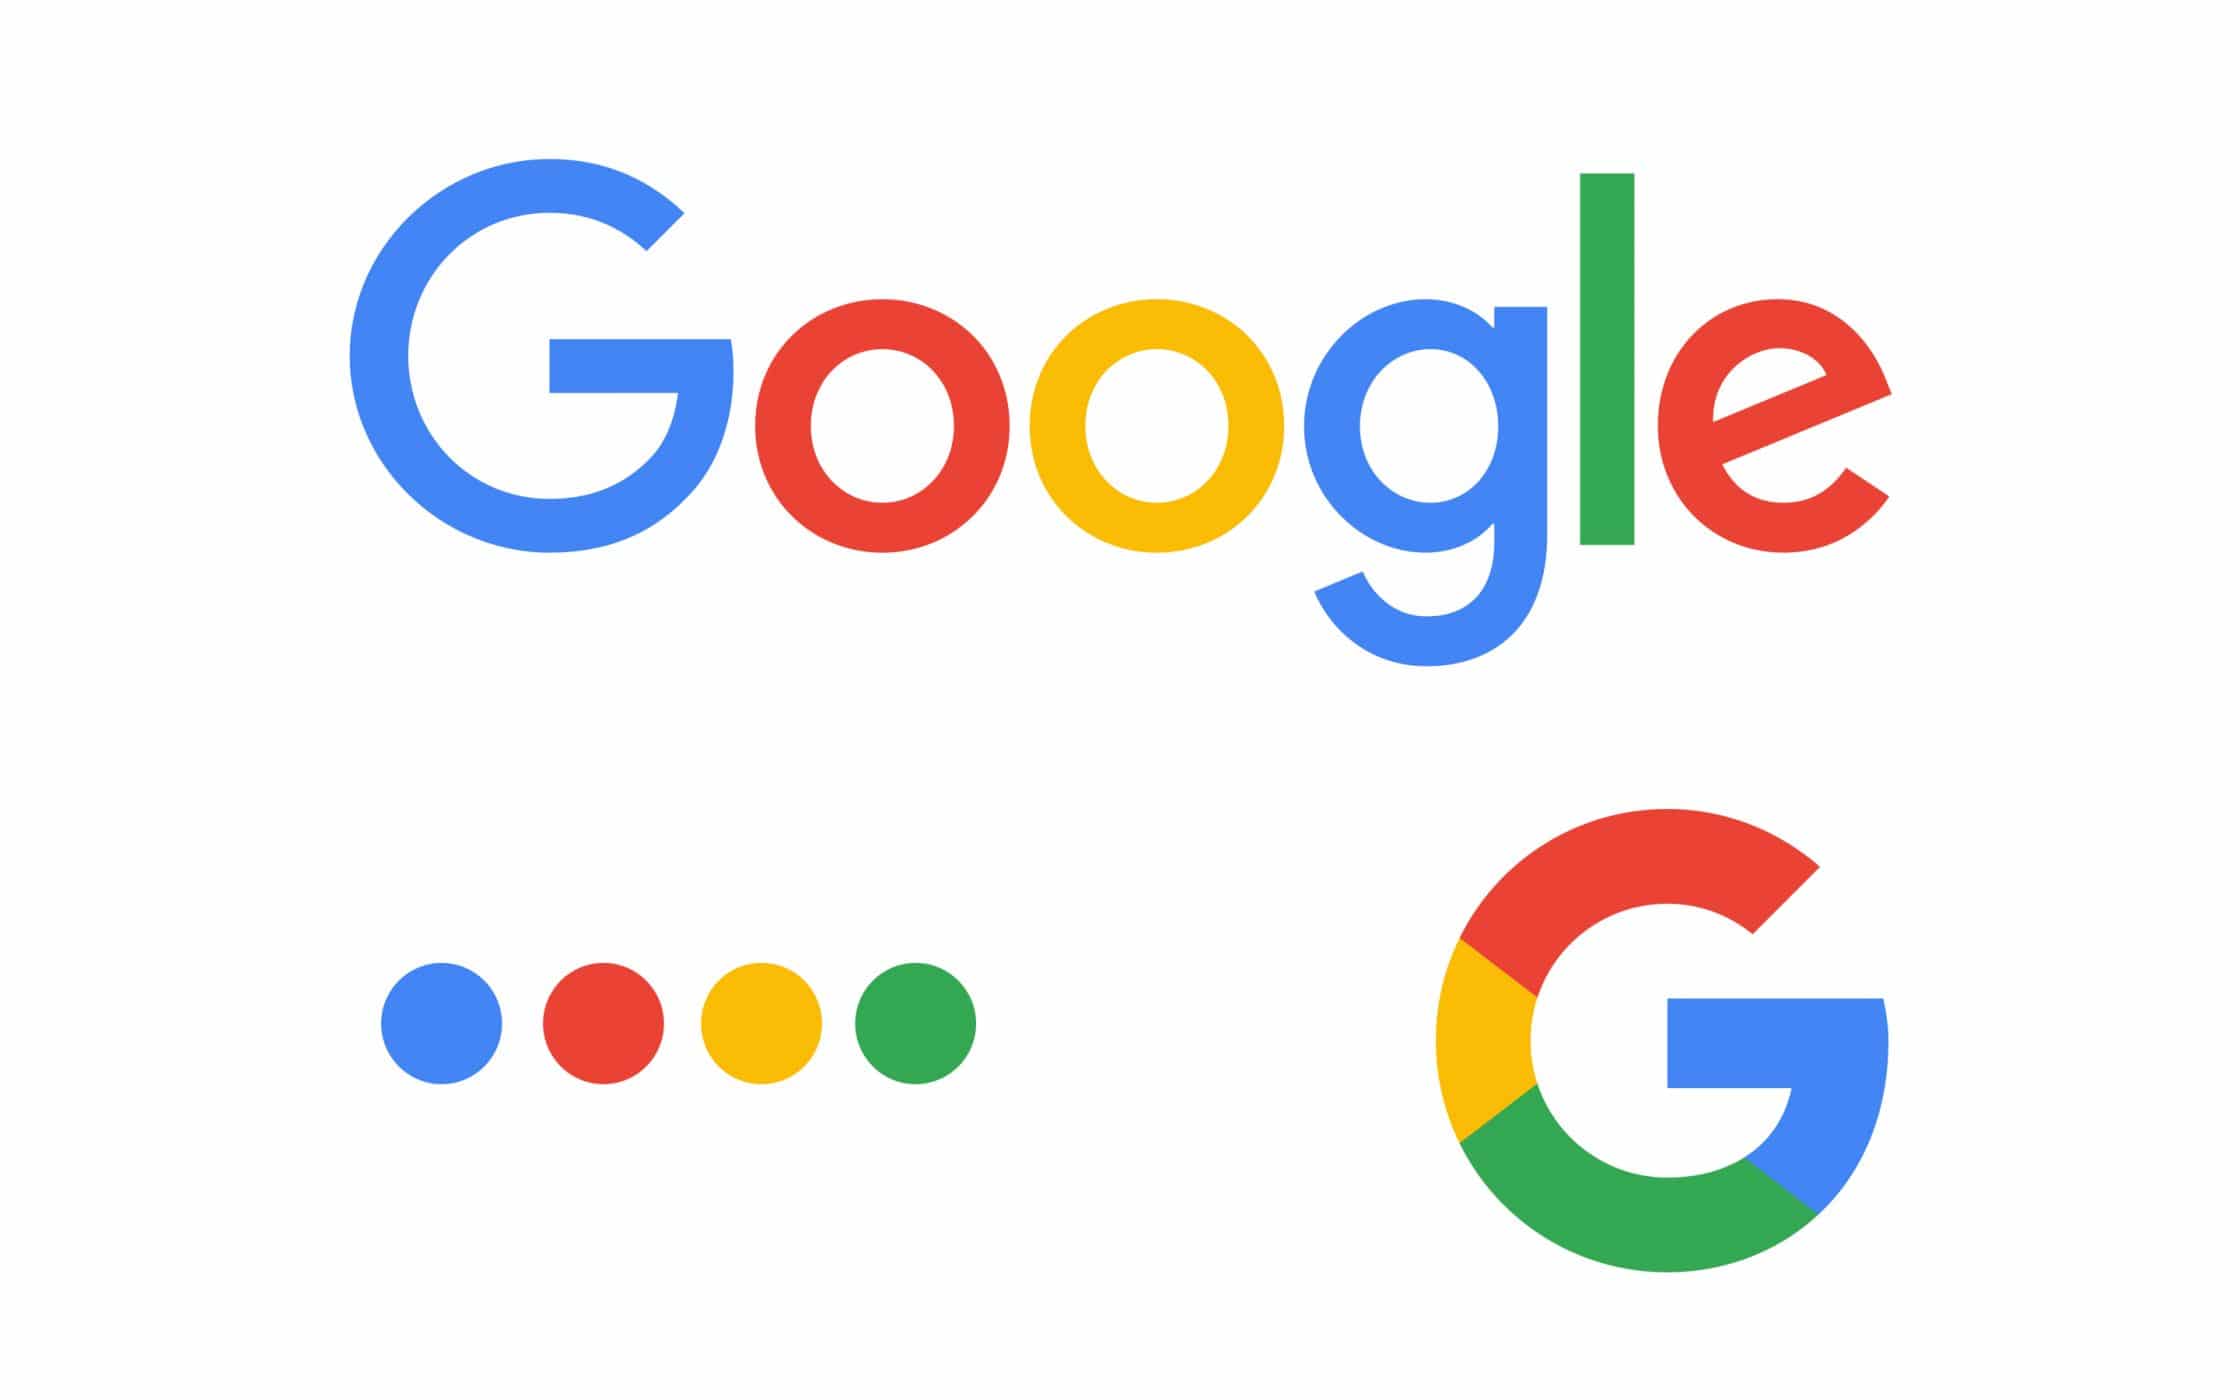 Logo của Google được thiết kế như thế nào?
